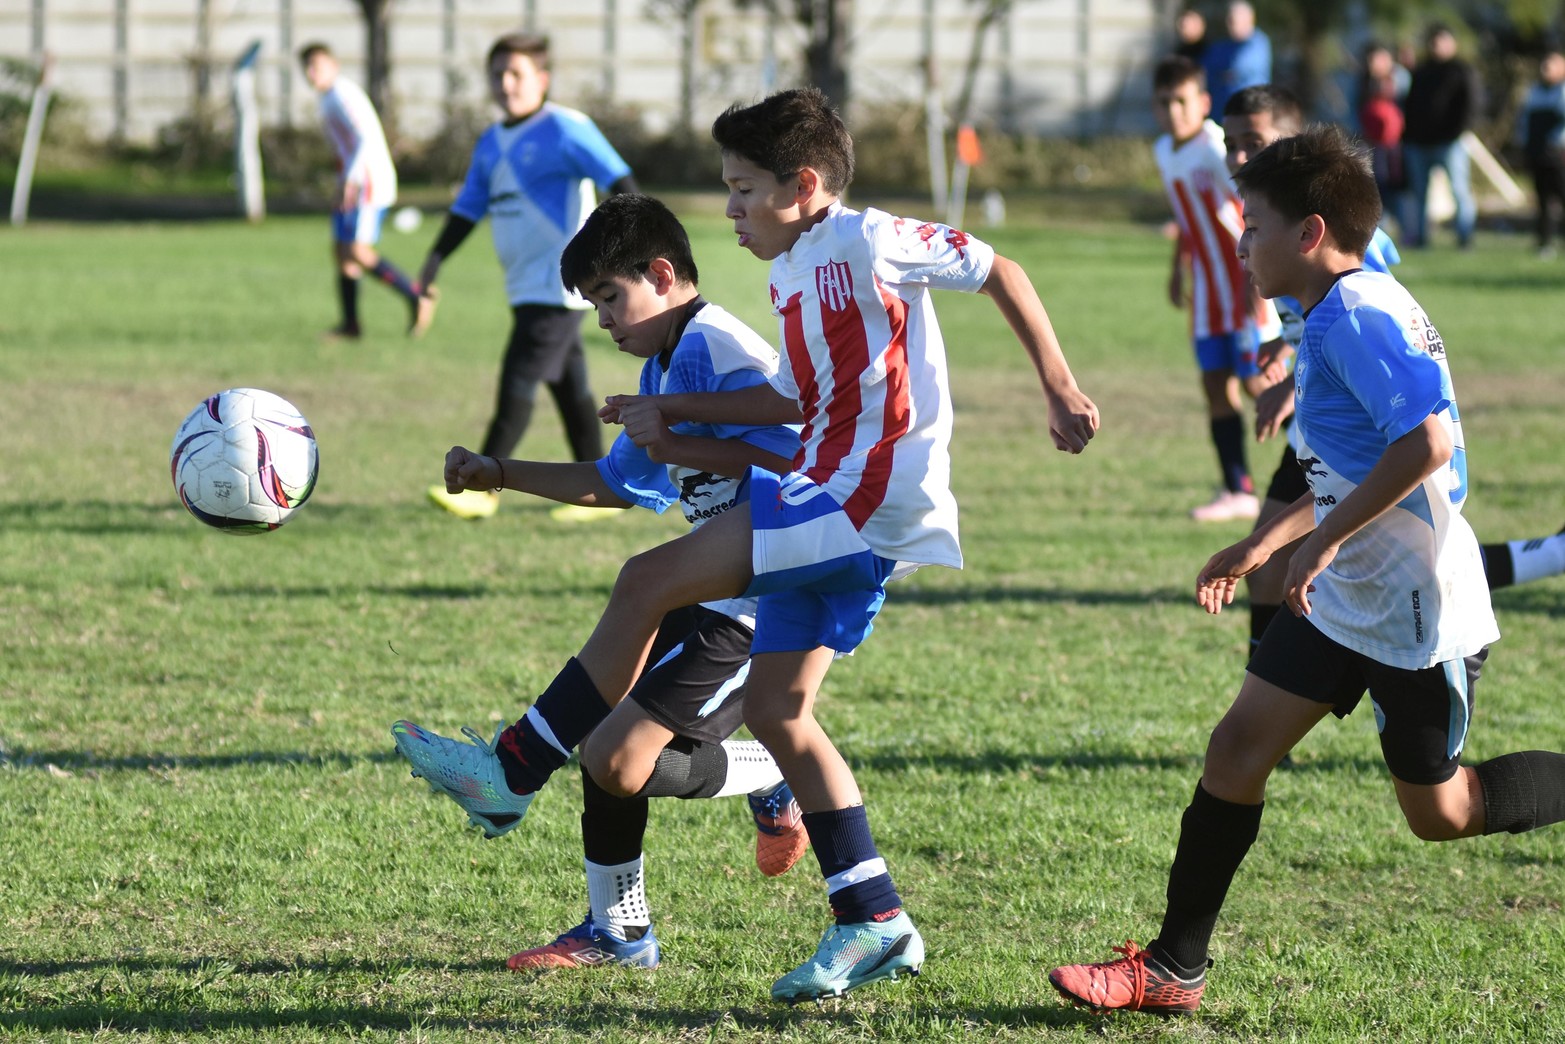 Torneo fútbol infantil en La Perla del oeste. Este domingo finalizó el campeonato que albergó a mas de 1.000 pibes de toda la región. 